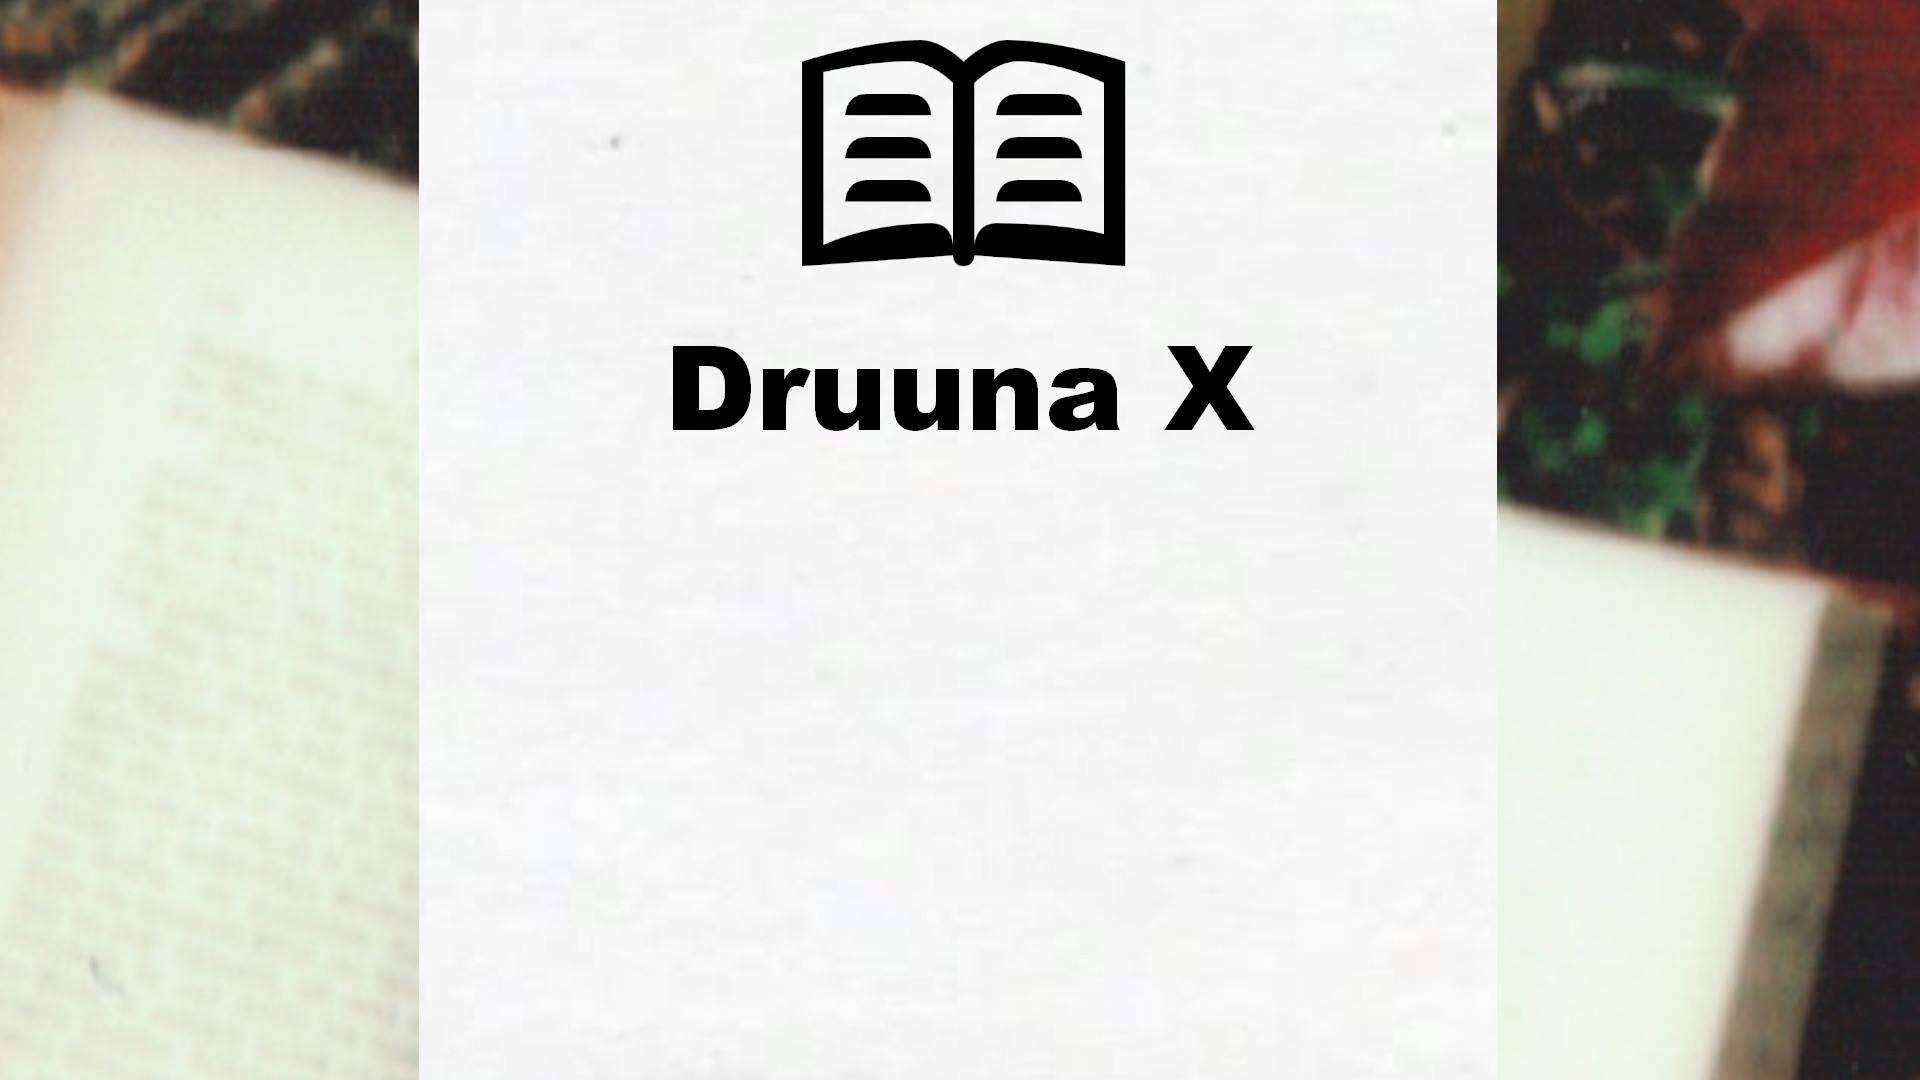 Druuna X, tome 2 – Critique